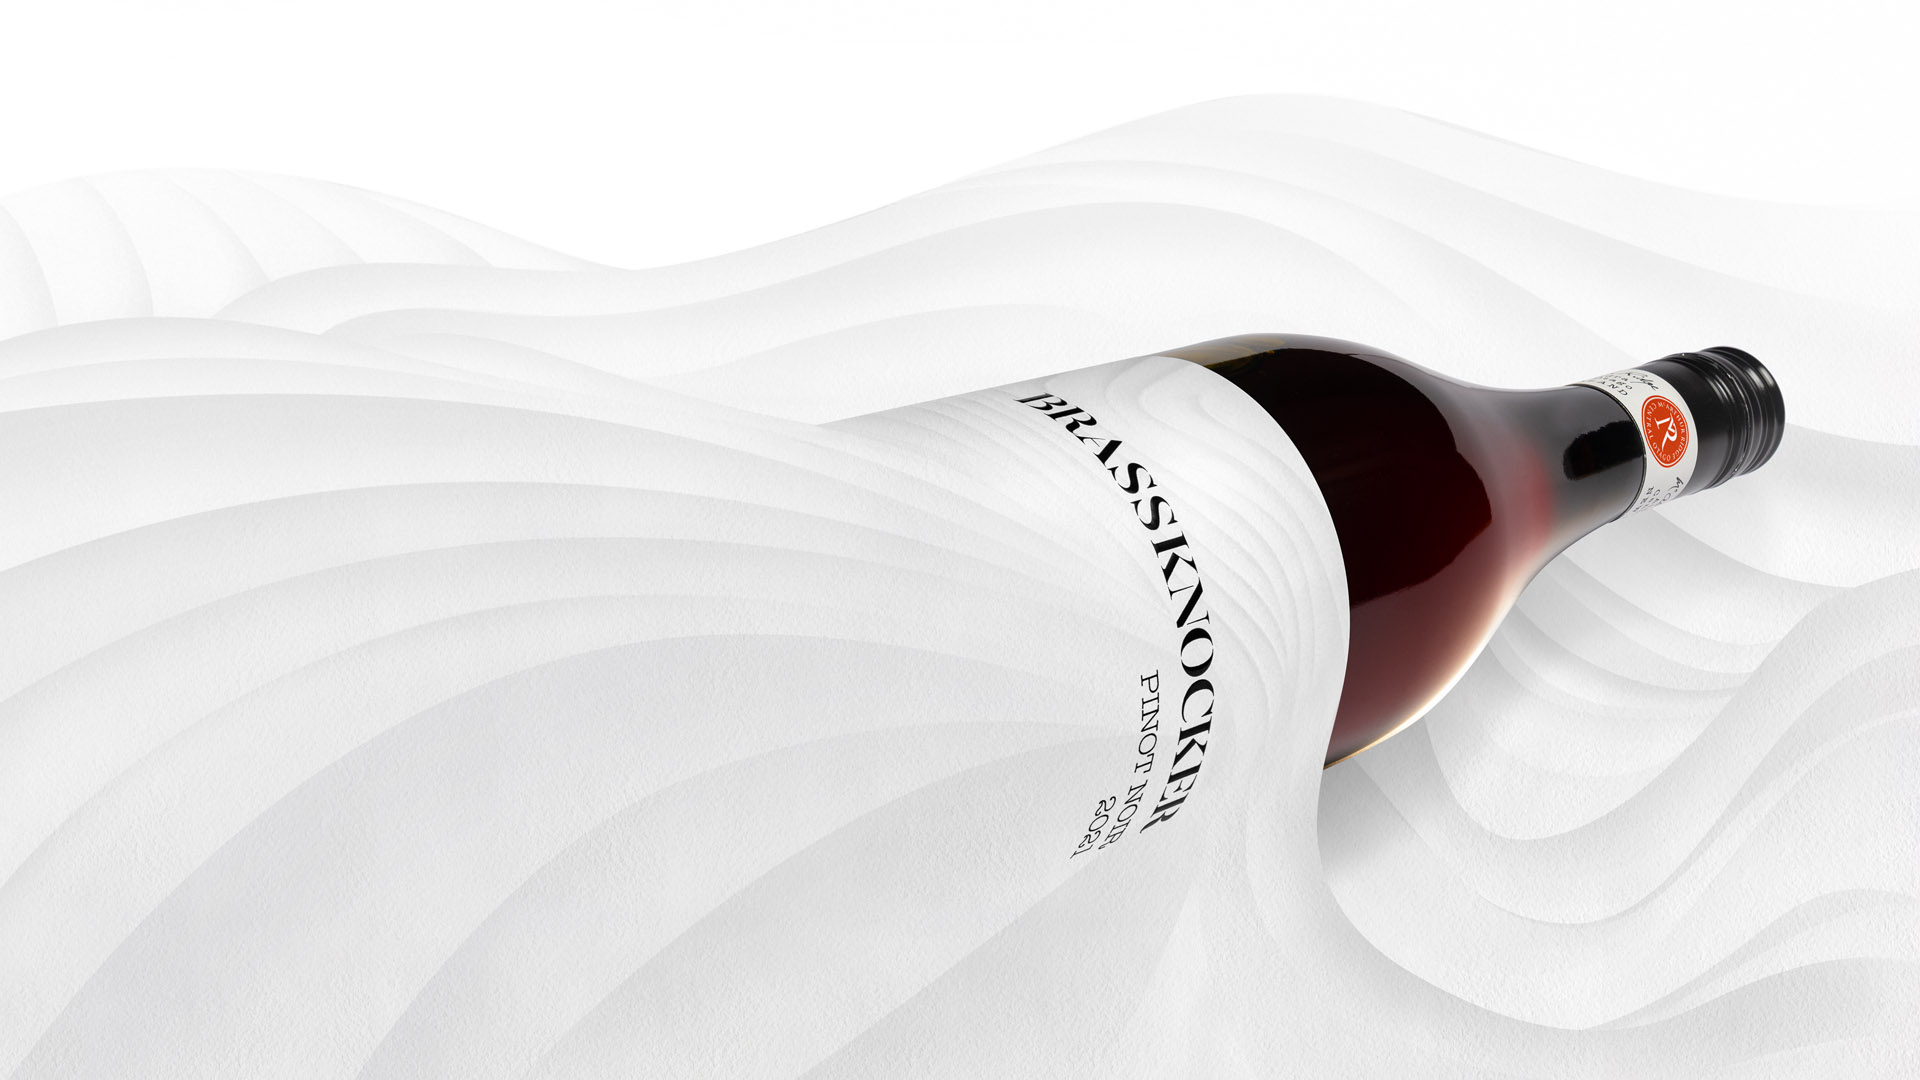 McArthur Ridge’s Wine Bottle Design